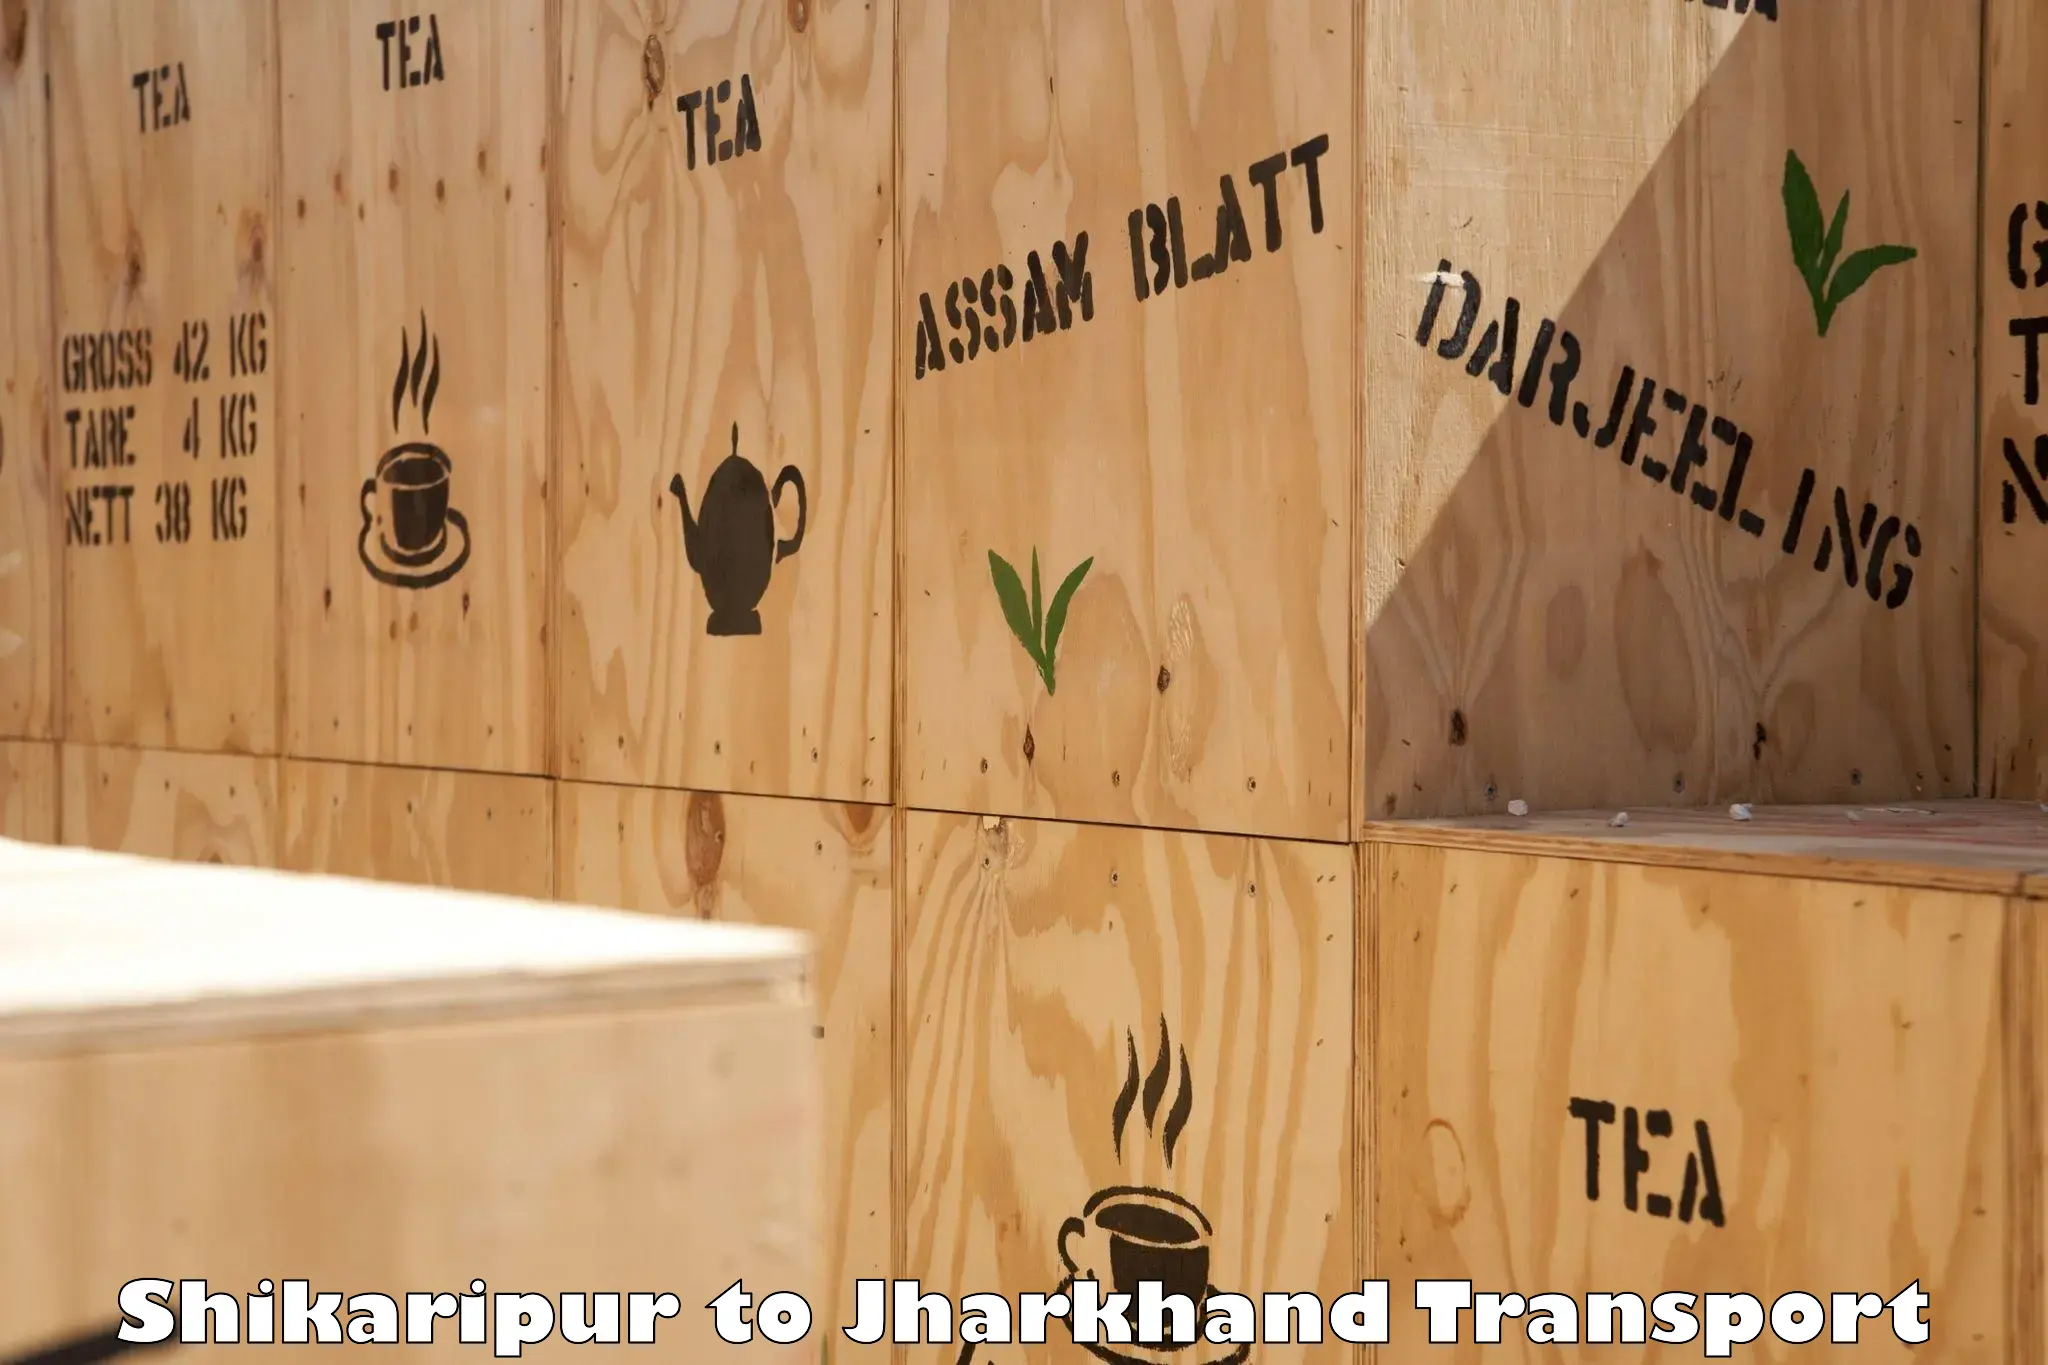 Lorry transport service Shikaripur to Garhwa